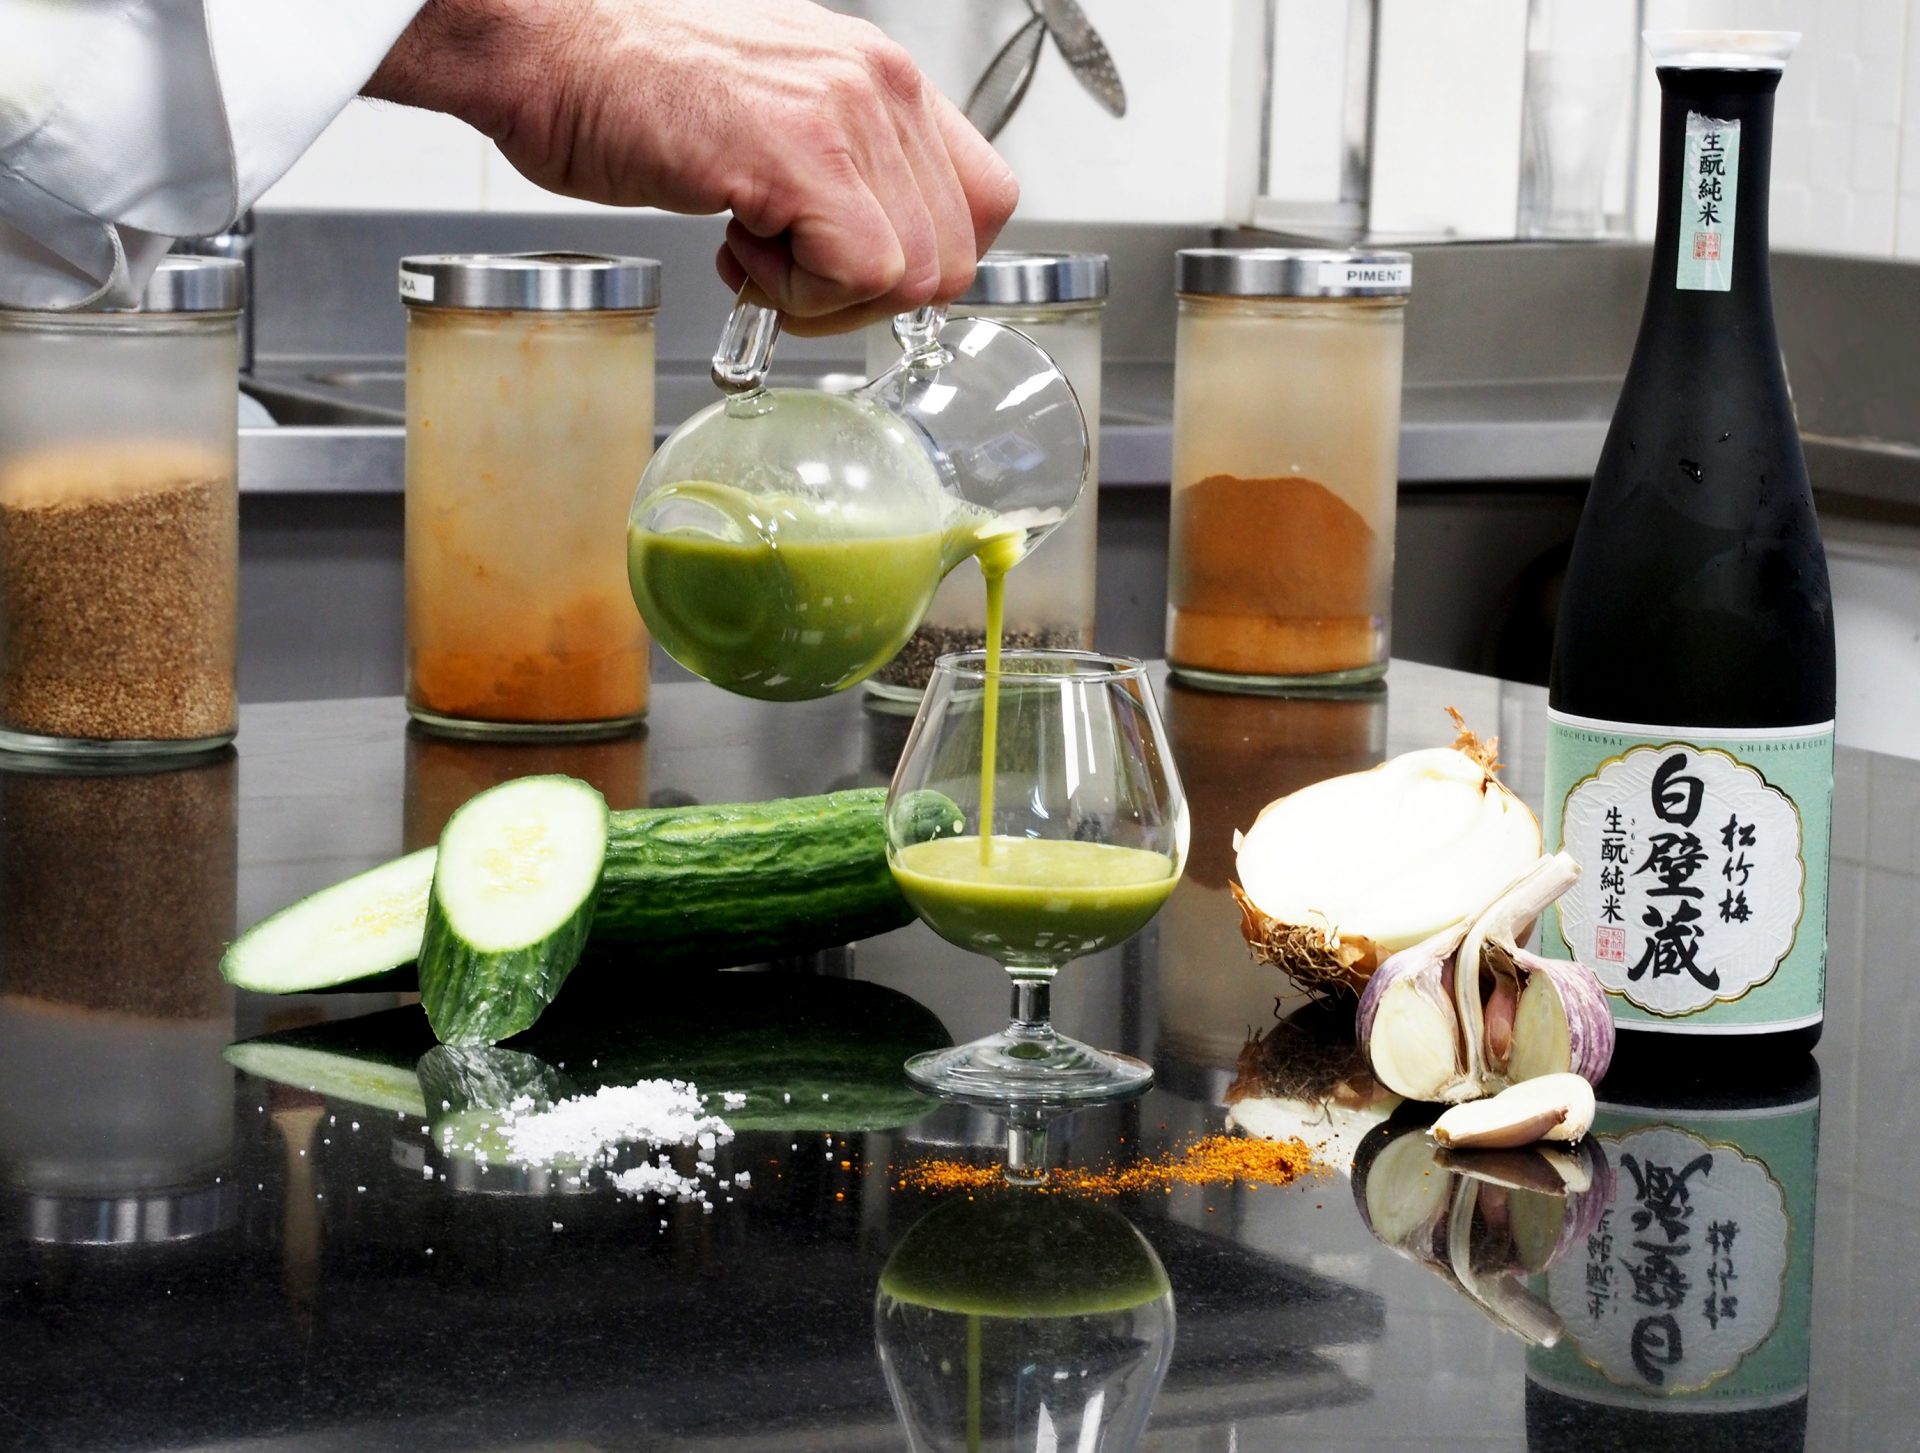 Le saké cocktail avec Shirakabegura Kimoto de la Braisiere par Jacques Faussat